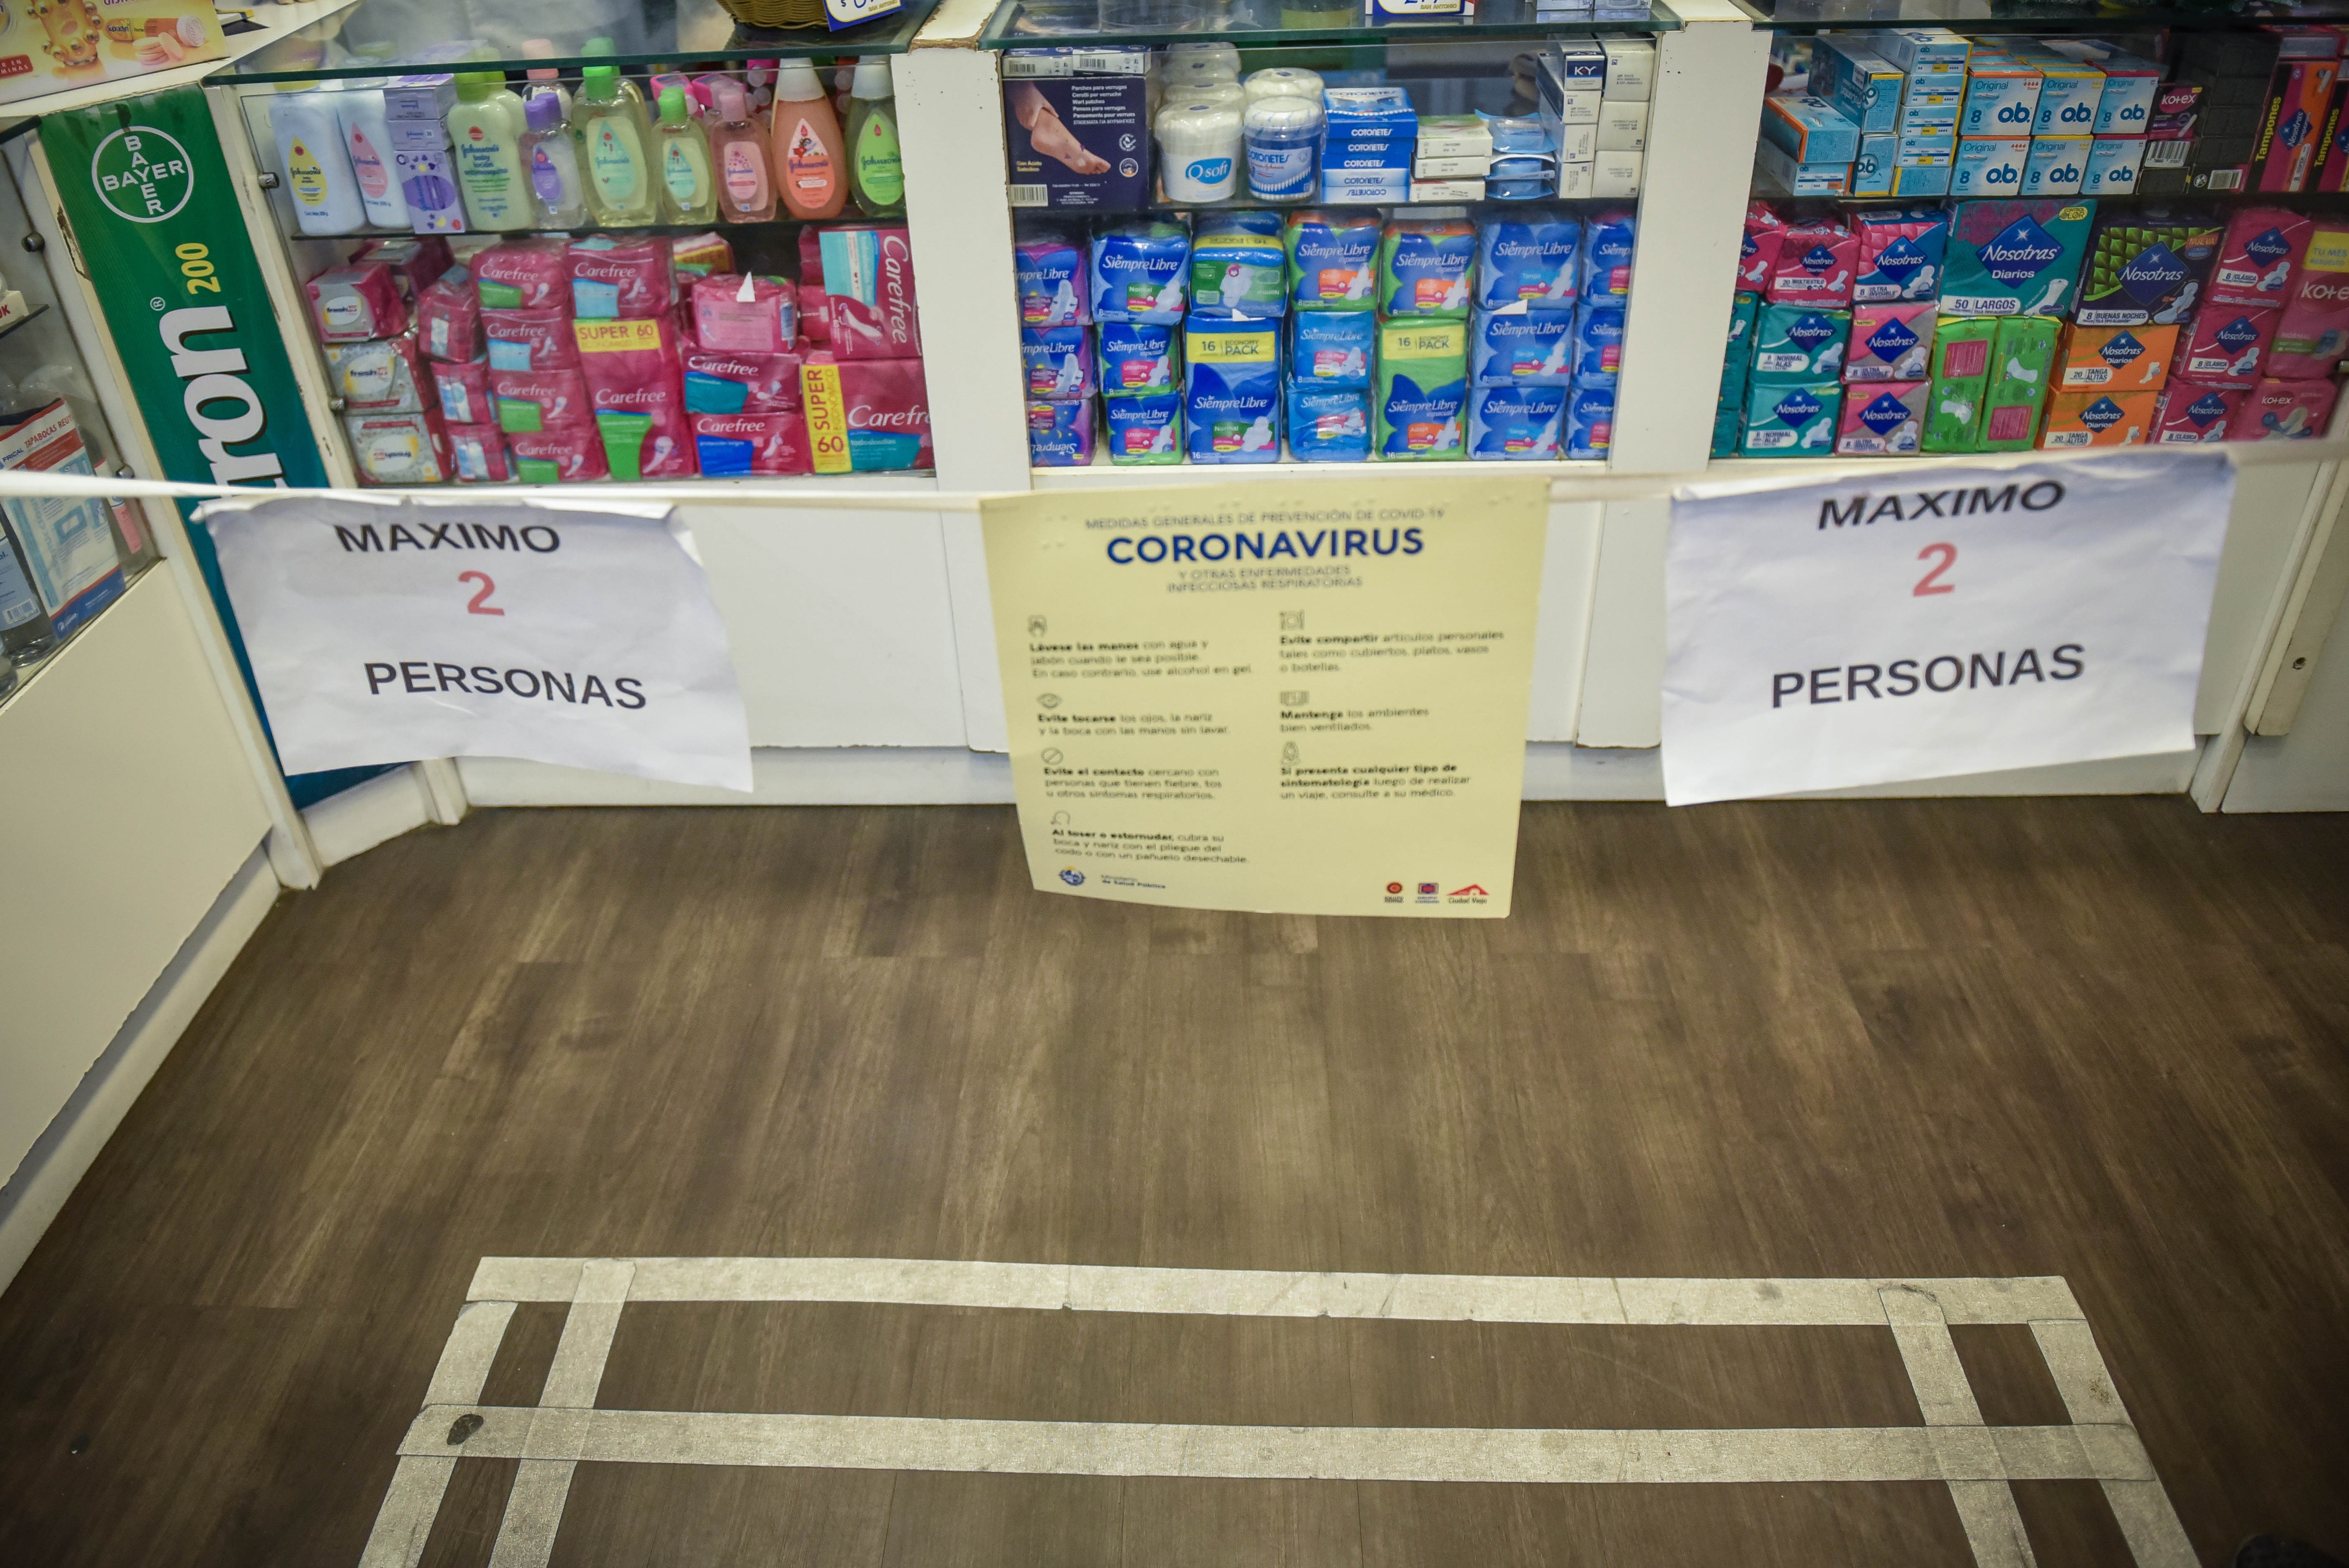 15/05/2020 Medidas de distanciamiento en una farmacia de Montevideo, Uruguay
POLITICA SUDAMÉRICA INTERNACIONAL URUGUAY
PPI / ZUMA PRESS / CONTACTOPHOTO
